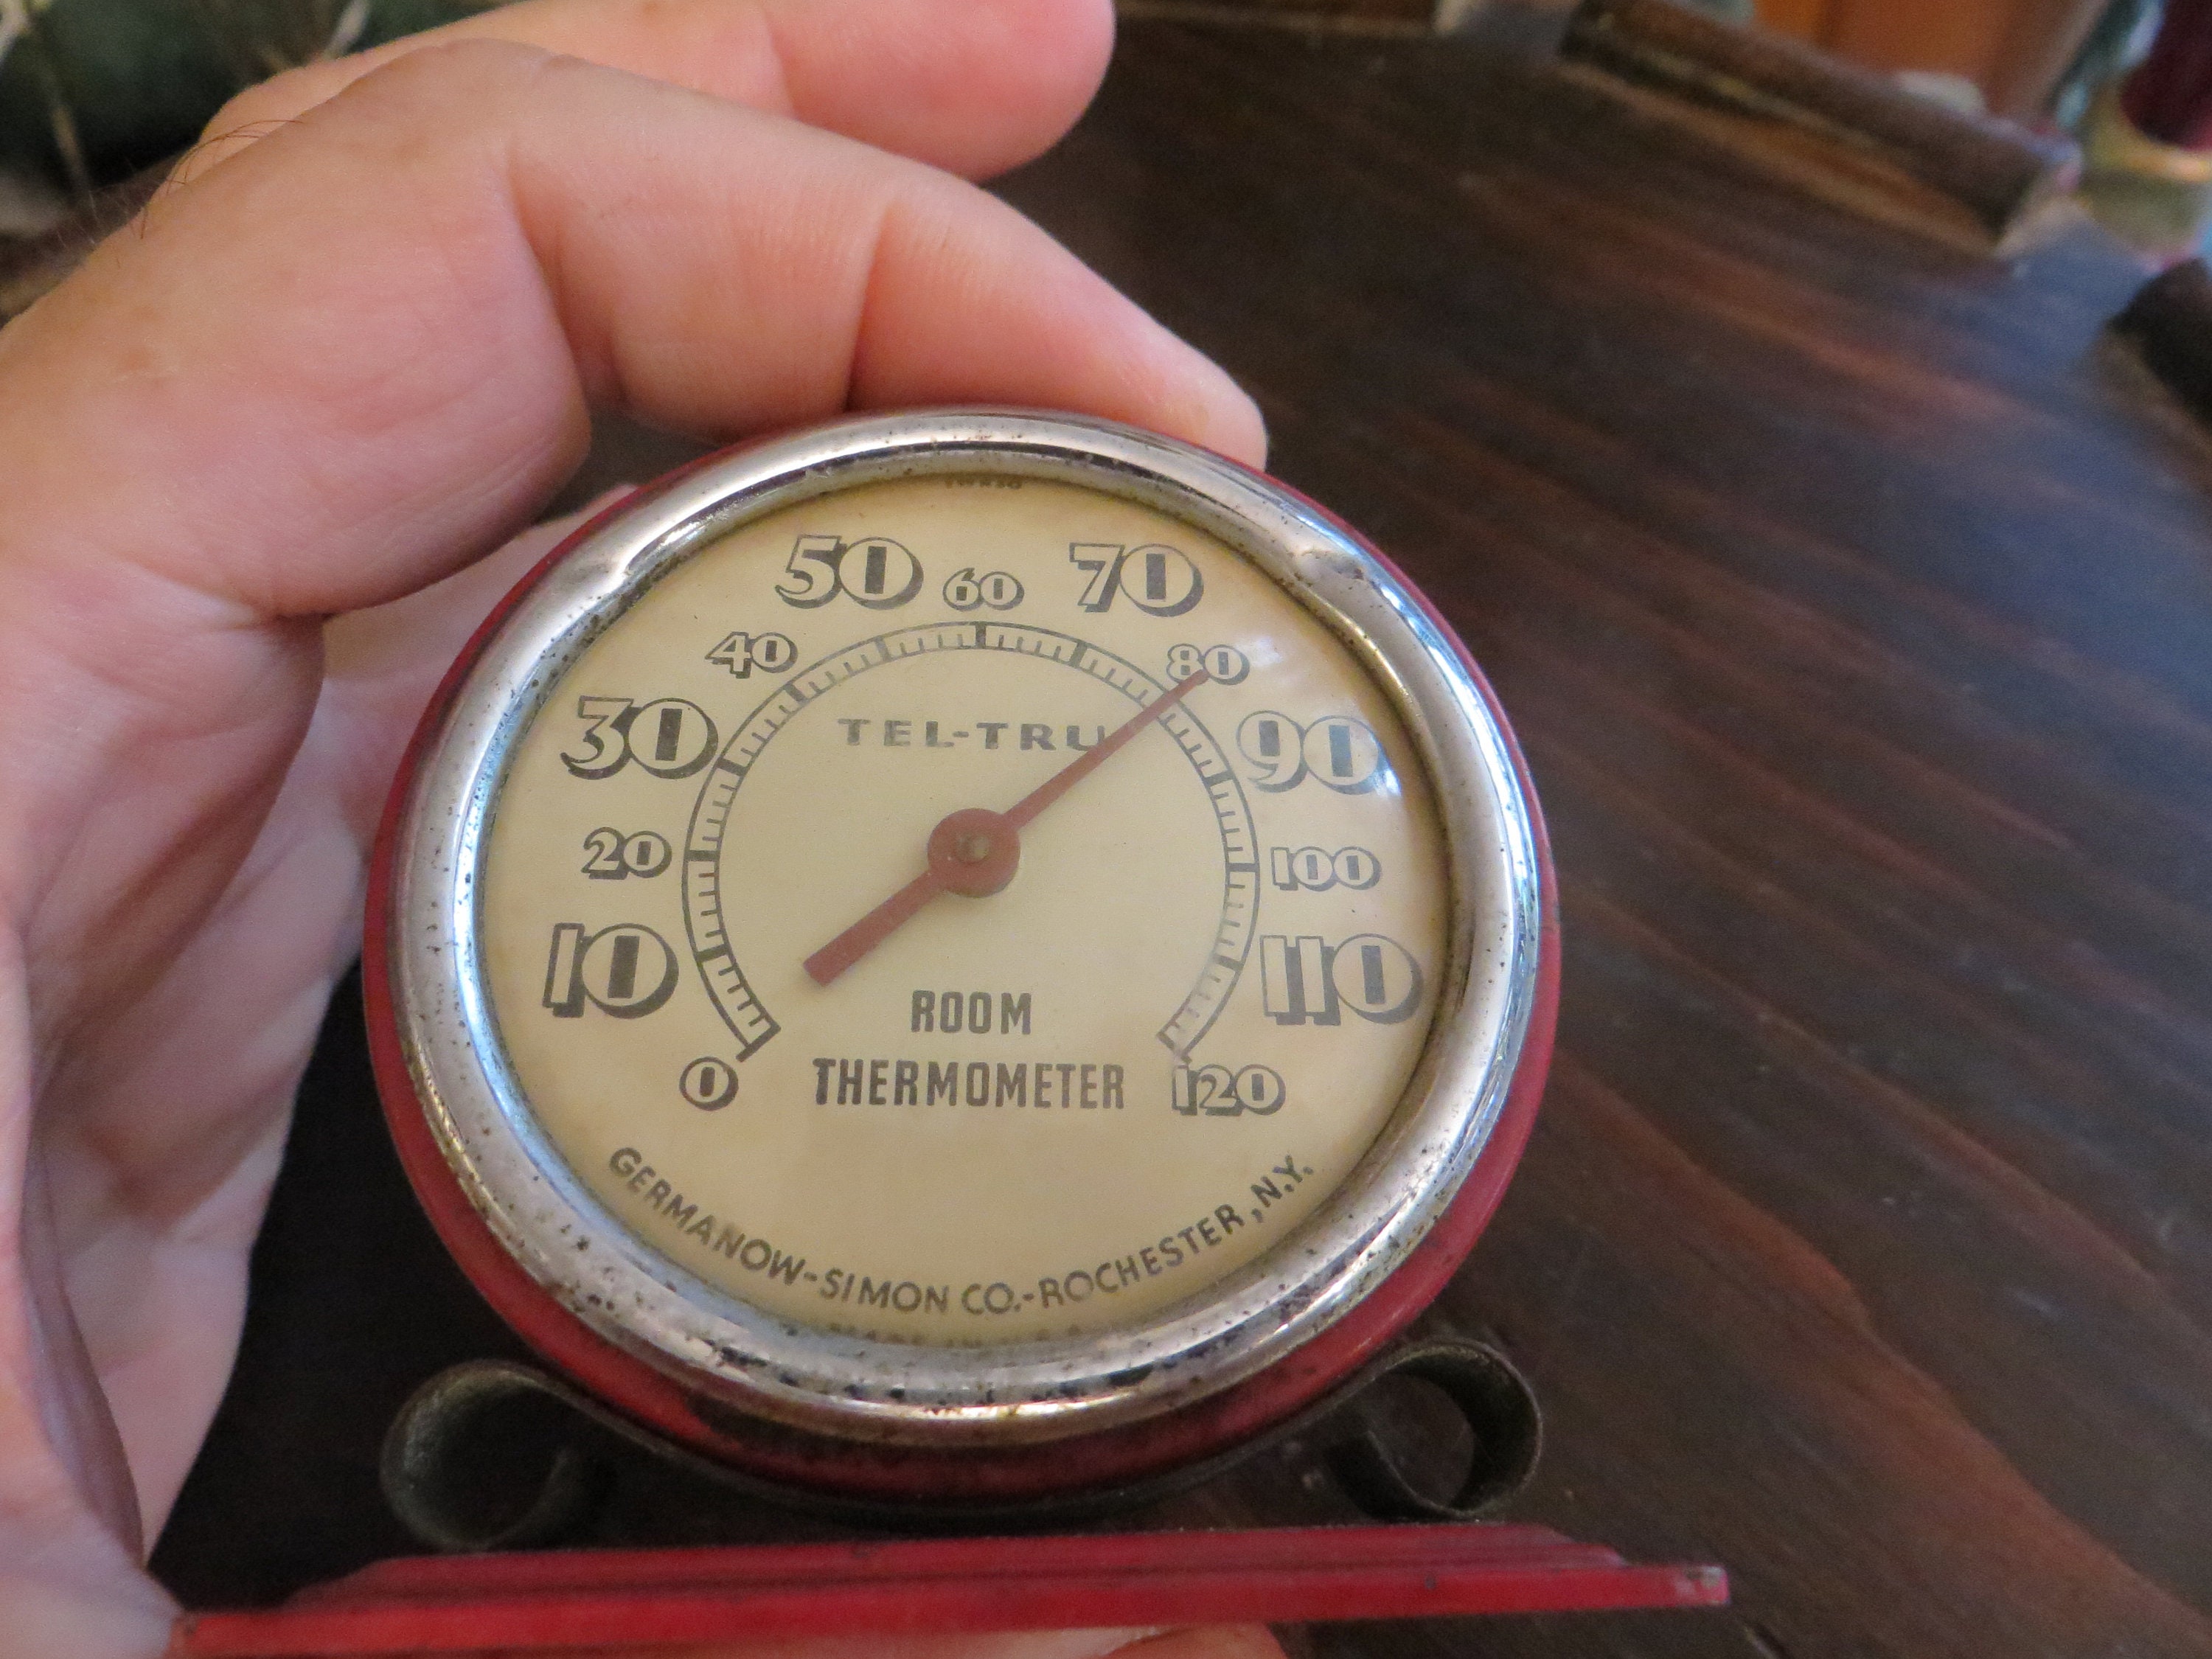 Vintage 1930's Tel-tru Desk Thermometer, USA White G-S Germanon Simon Co.